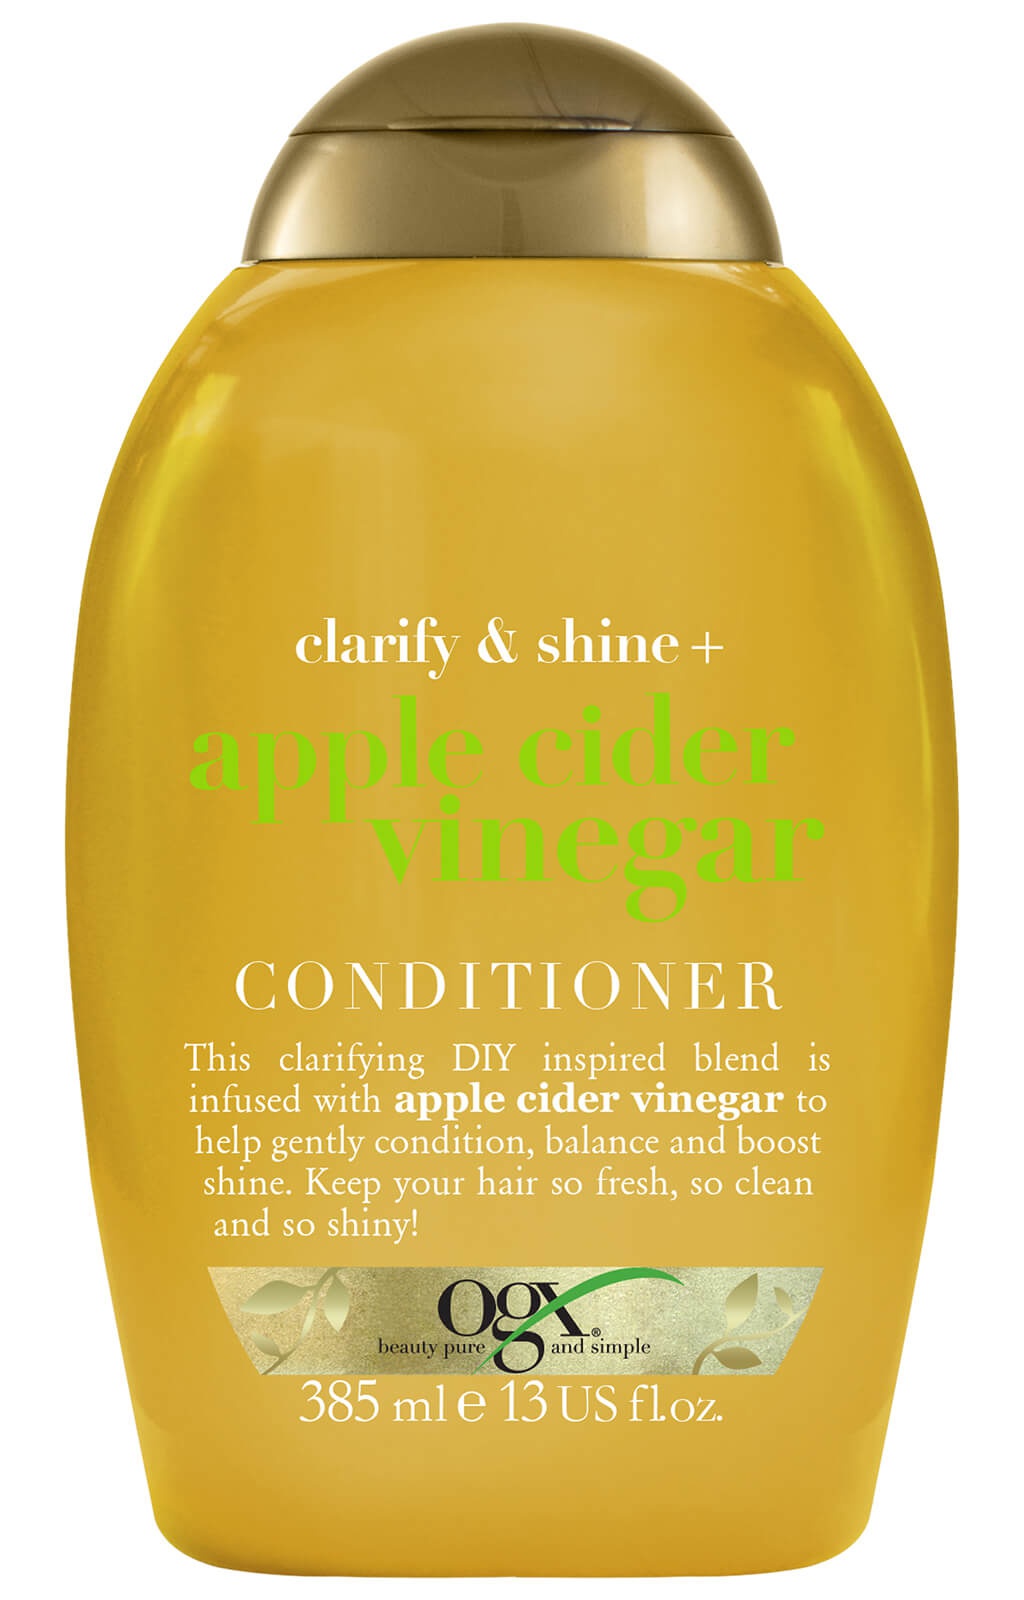 OGX Clarify & Shine + Apple Cider Vinegar Conditioner